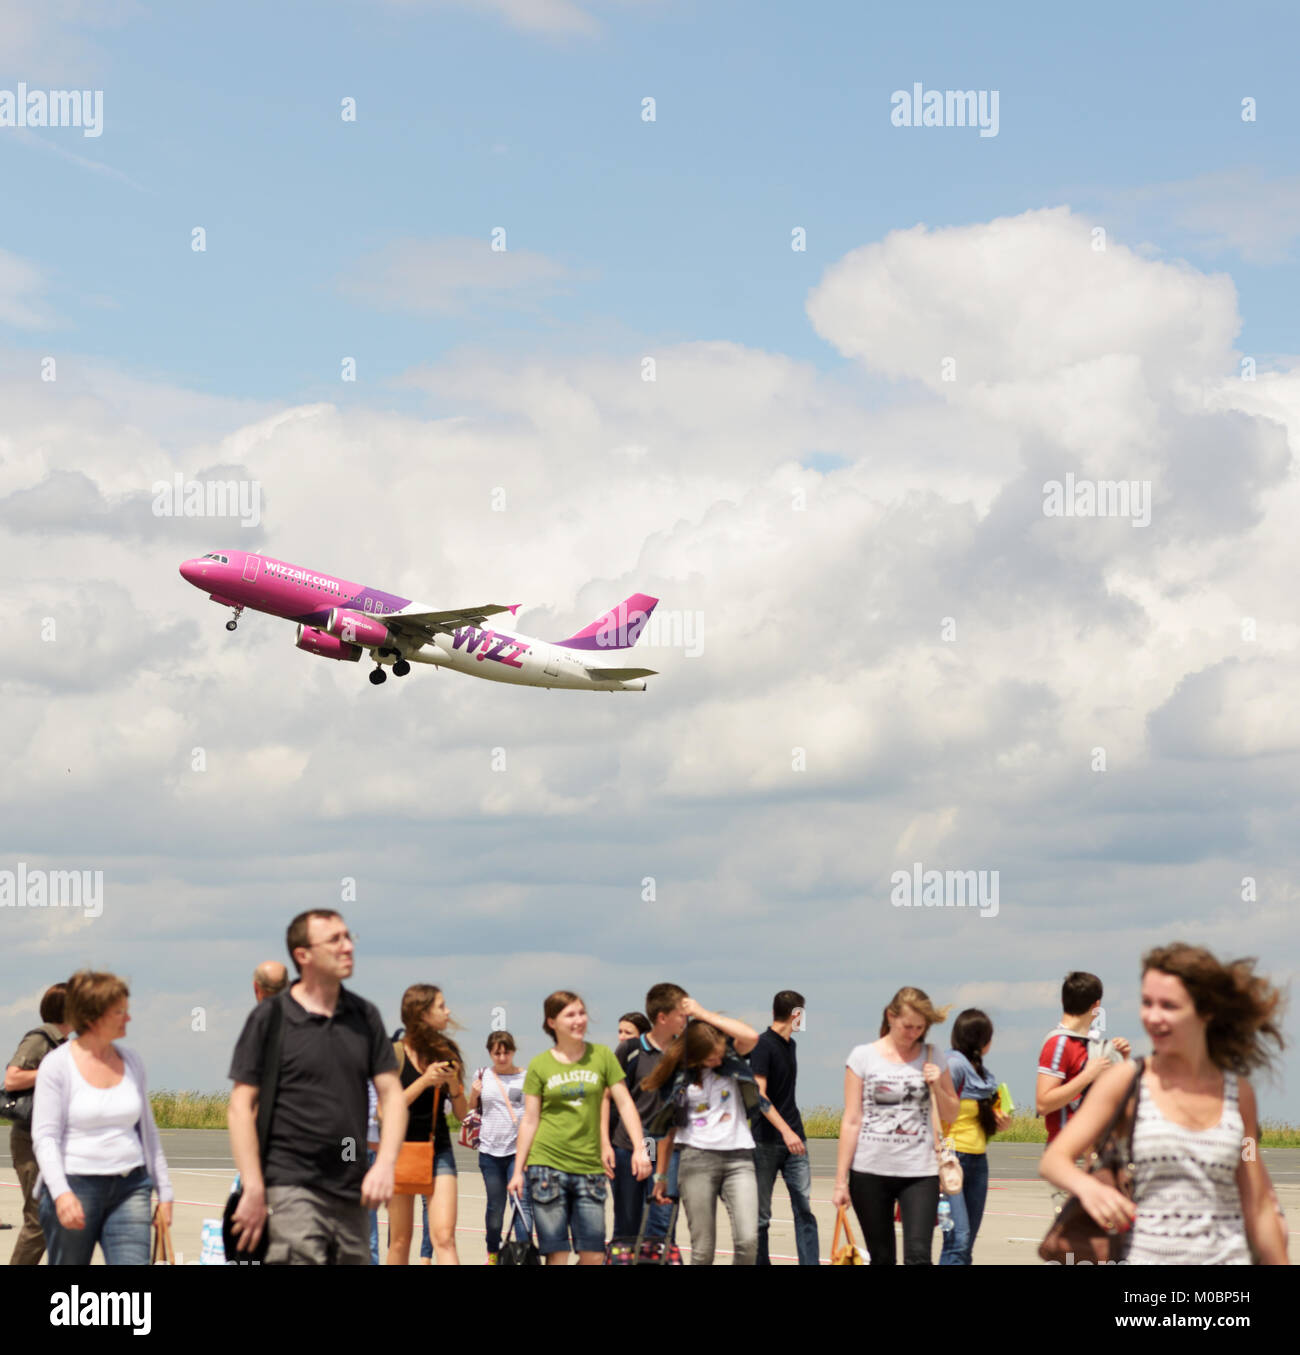 Dortmund, Allemagne - 22 juin 2013 : Les passagers sur une piste à l'aéroport de Dortmund, Allemagne le 22 juin 2013, sous Wizzair avion au décollage. Créé Banque D'Images